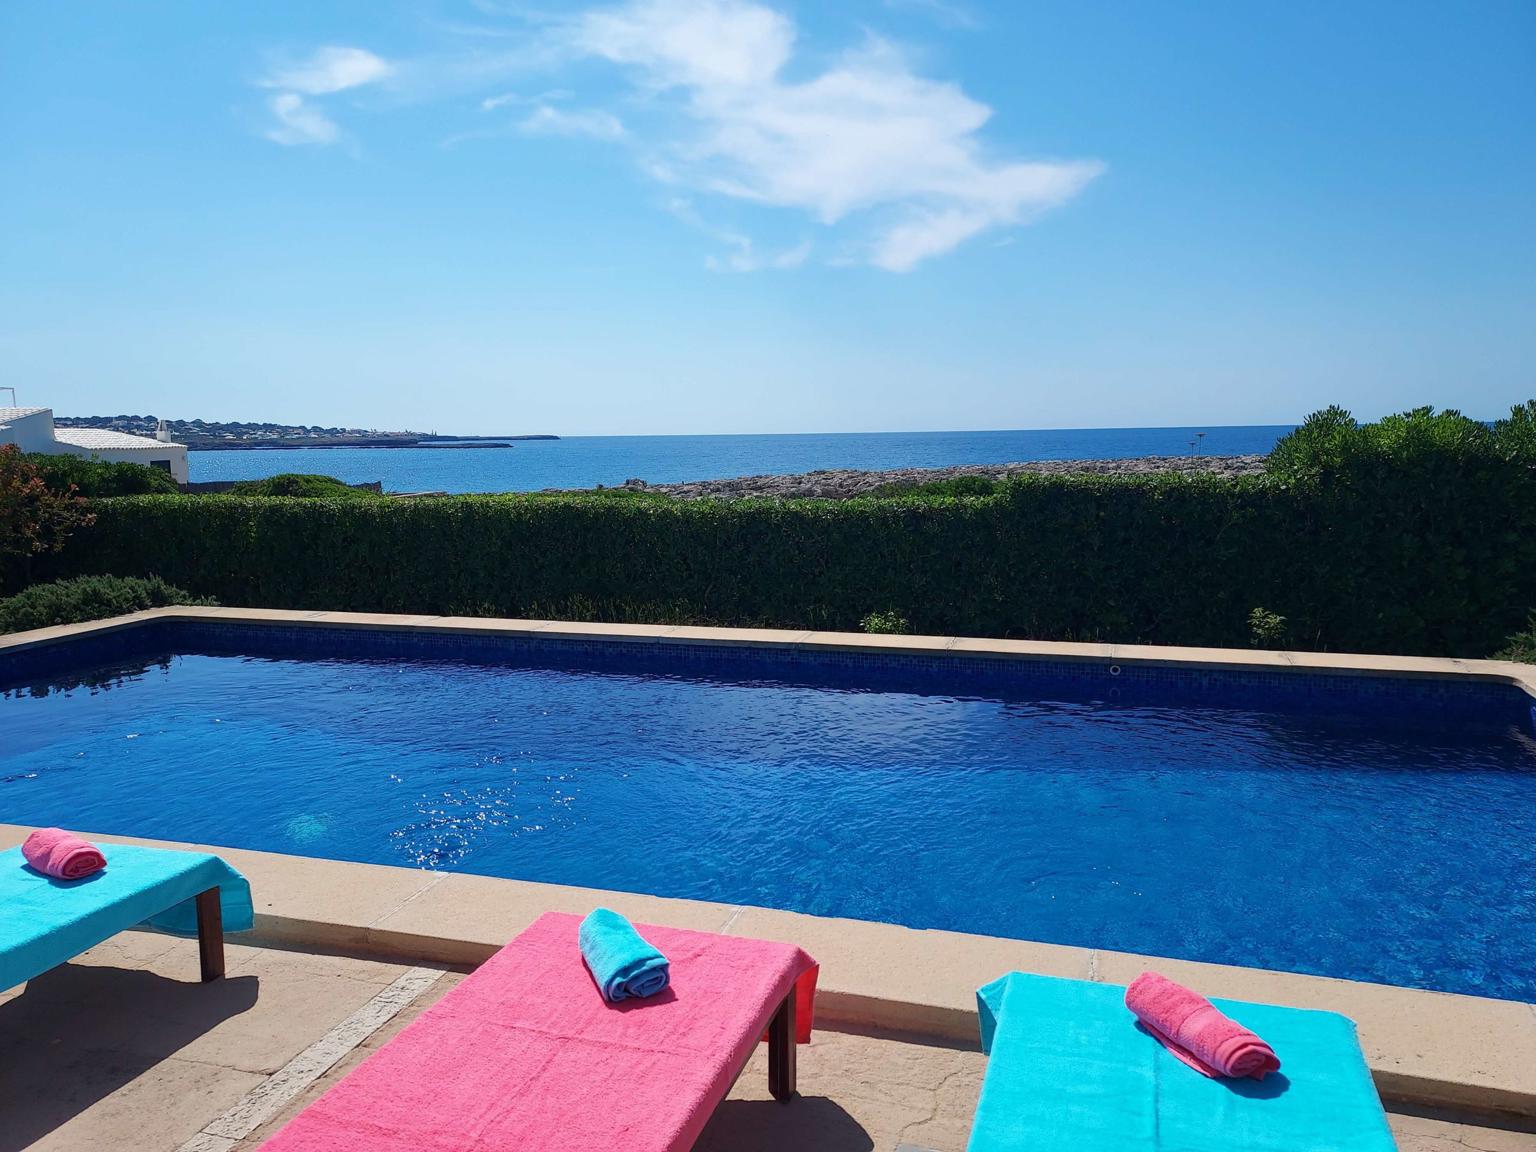 Villa Blau Mari - Sea views from the pool - Villa with pool - Cap den Font - Sant Lluis - Menorca